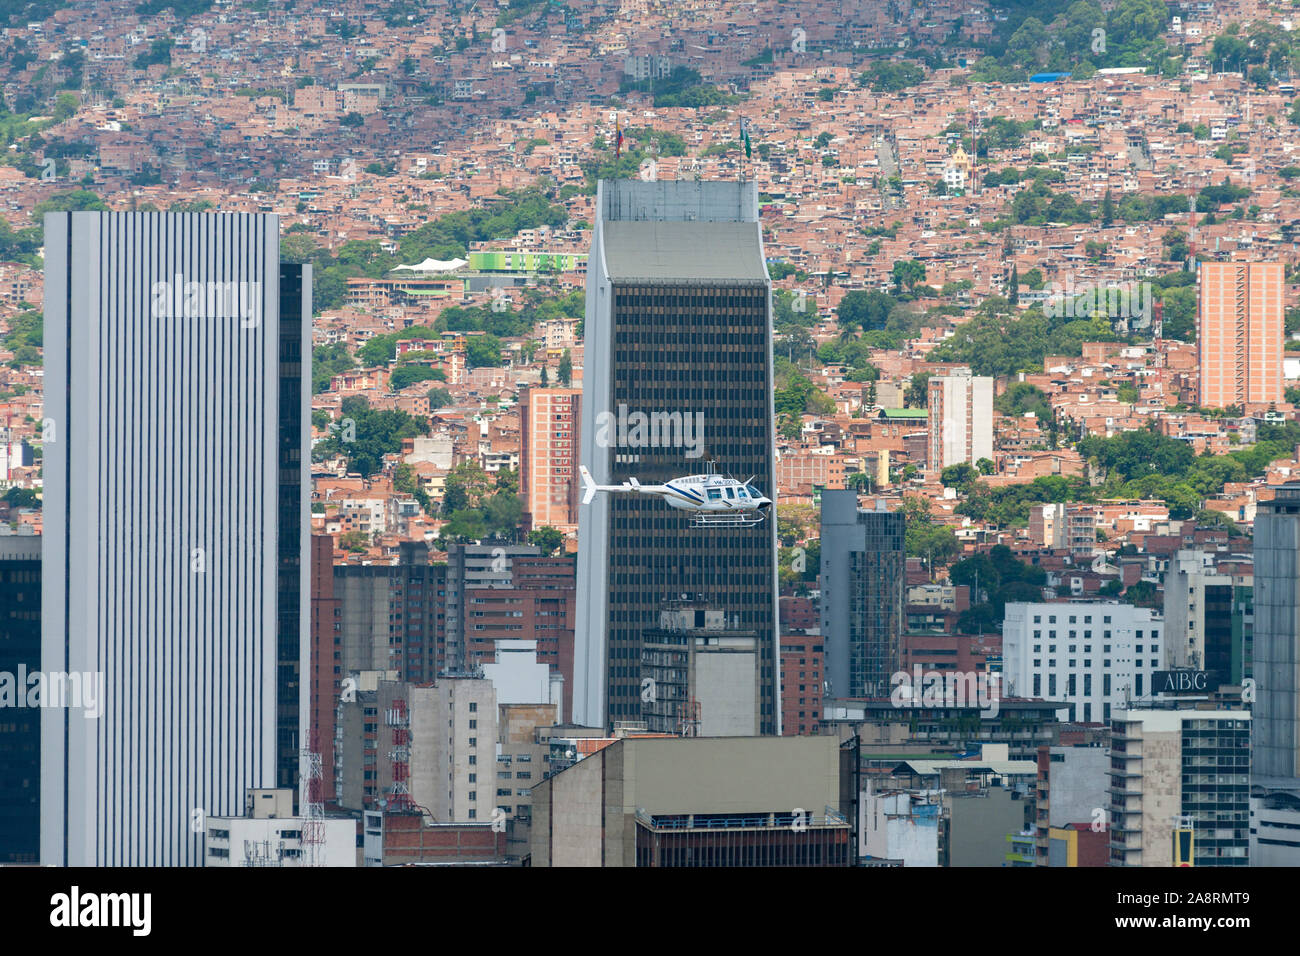 Vol en hélicoptère au centre-ville de Medellin, Colombie. Banque D'Images